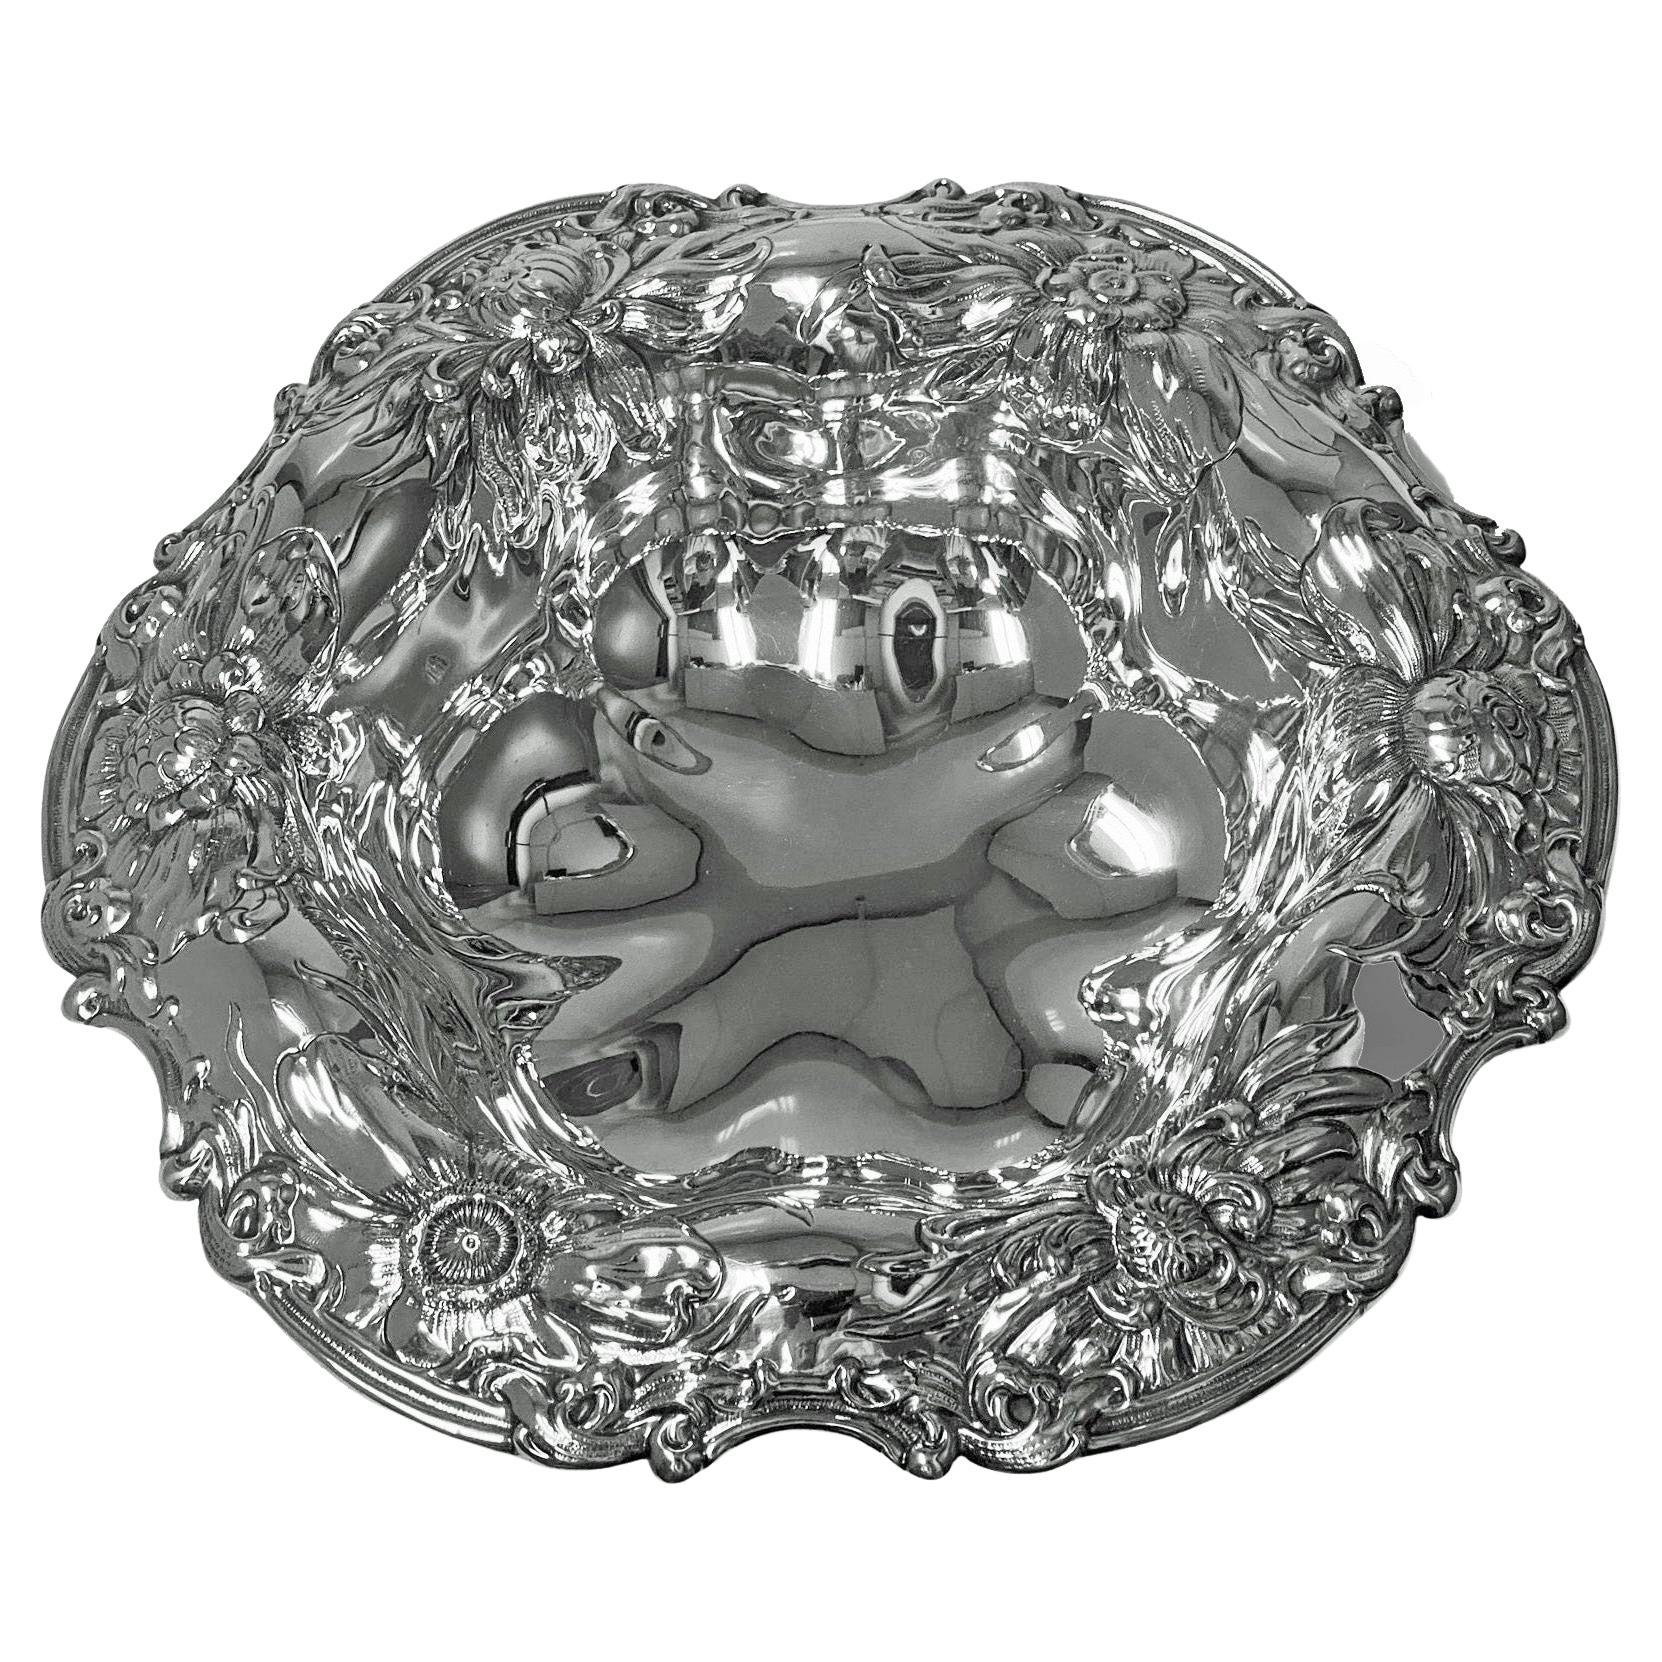 Gorham Art Nouveau Sterling Silver Floral Decorated Bowl, C.1900